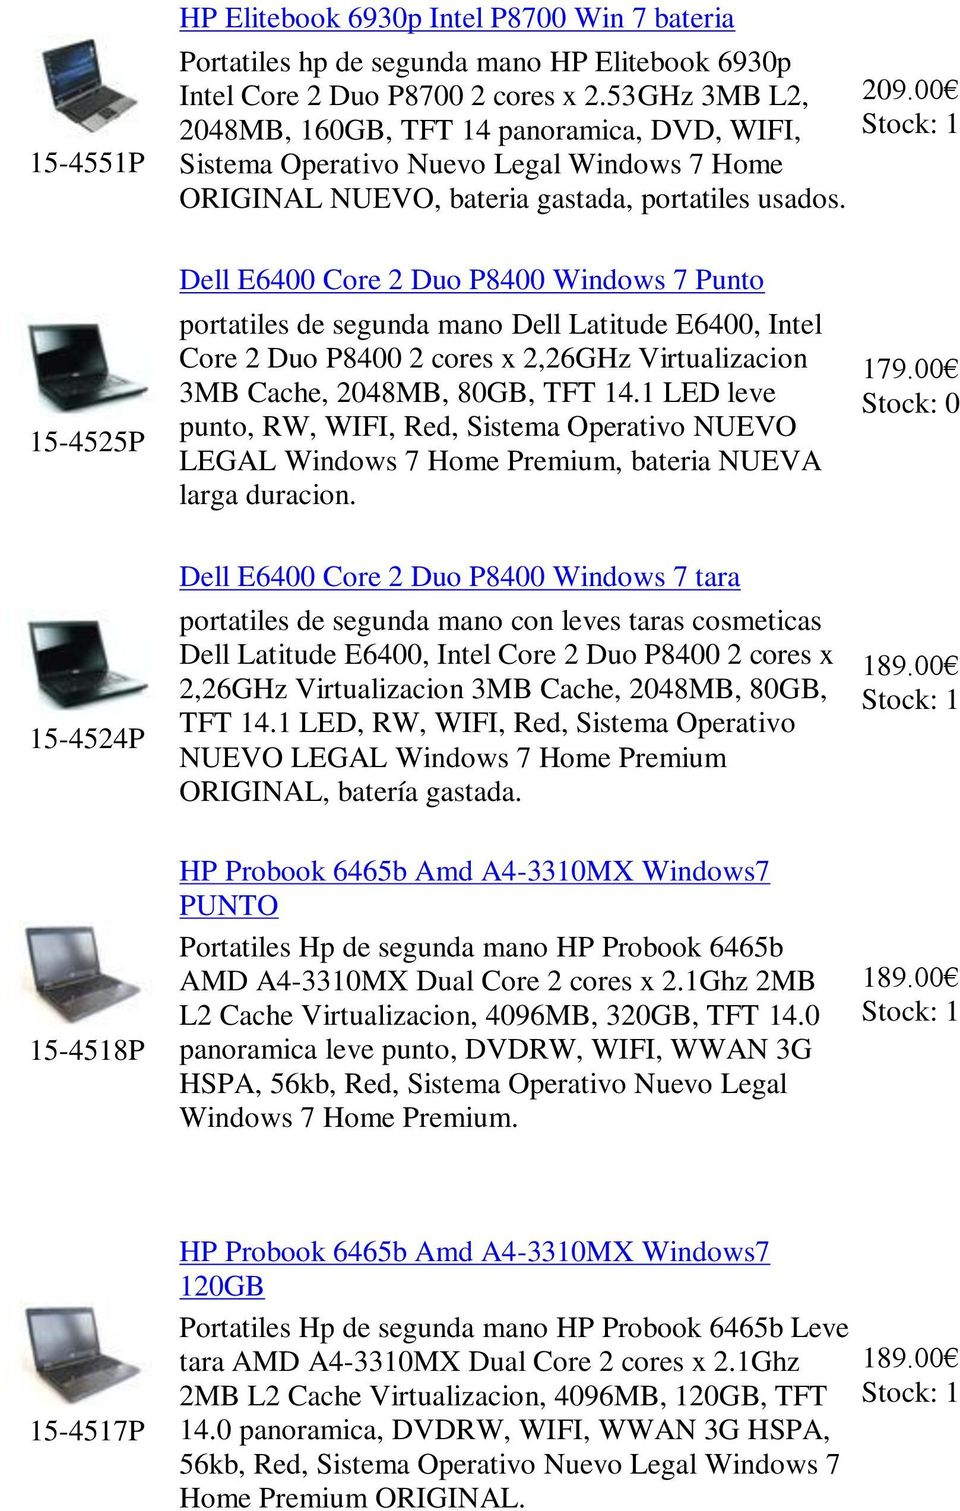 15-4525P Dell E6400 Core 2 Duo P8400 Windows 7 Punto portatiles de segunda mano Dell Latitude E6400, Intel Core 2 Duo P8400 2 cores x 2,26GHz Virtualizacion 3MB Cache, 2048MB, 80GB, TFT 14.